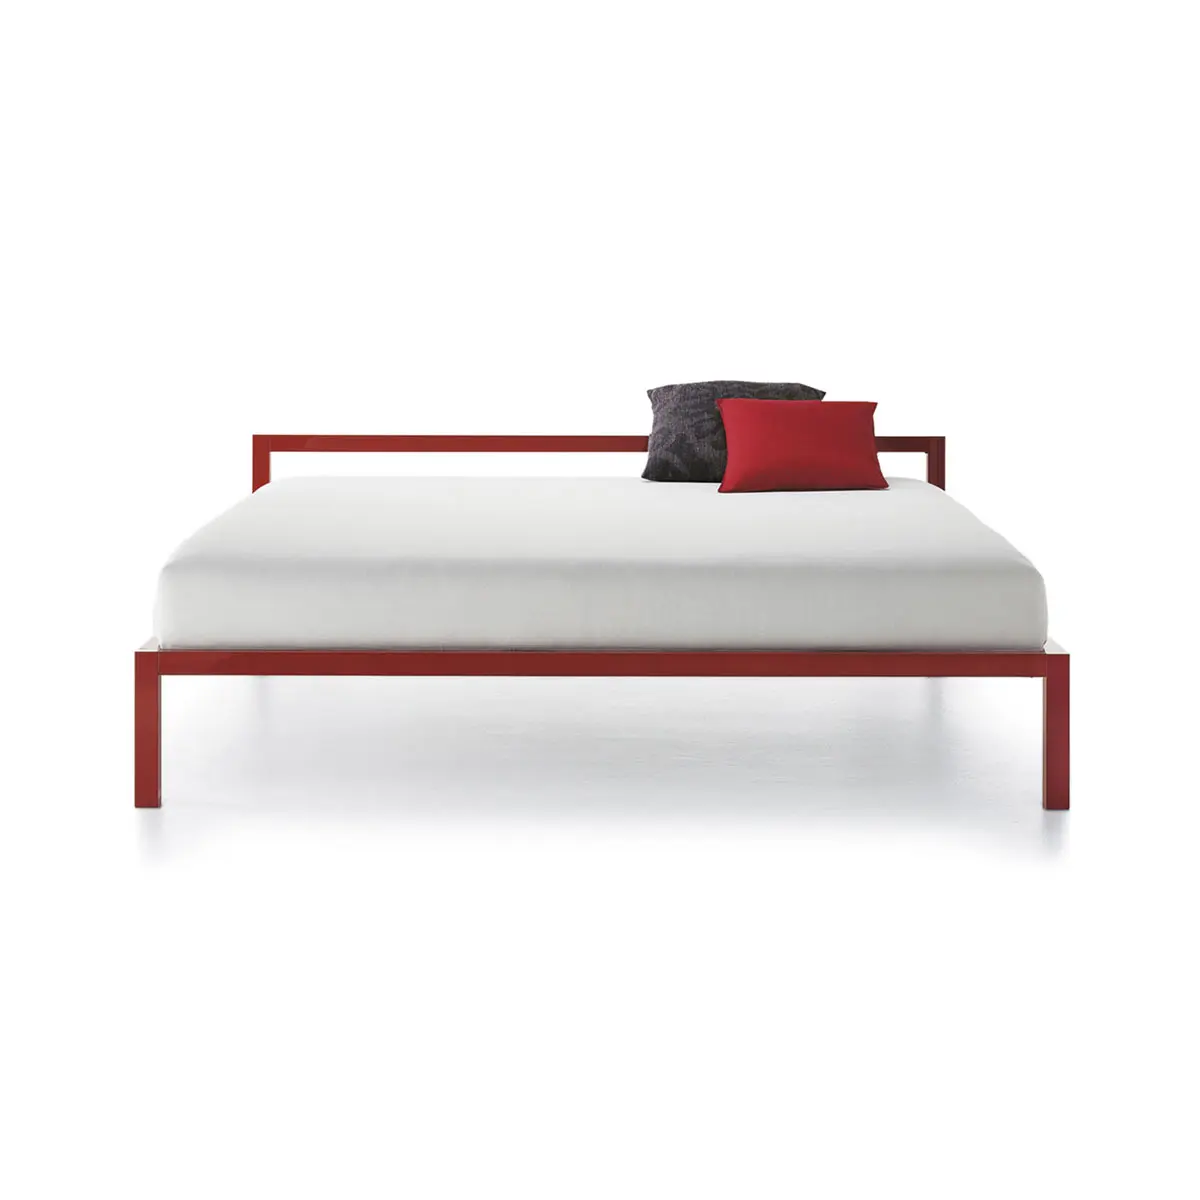 Aluminium Bed Italy ☞ Structure: Matt Painted Red ☞ Dimensions: 180 x 210 cm